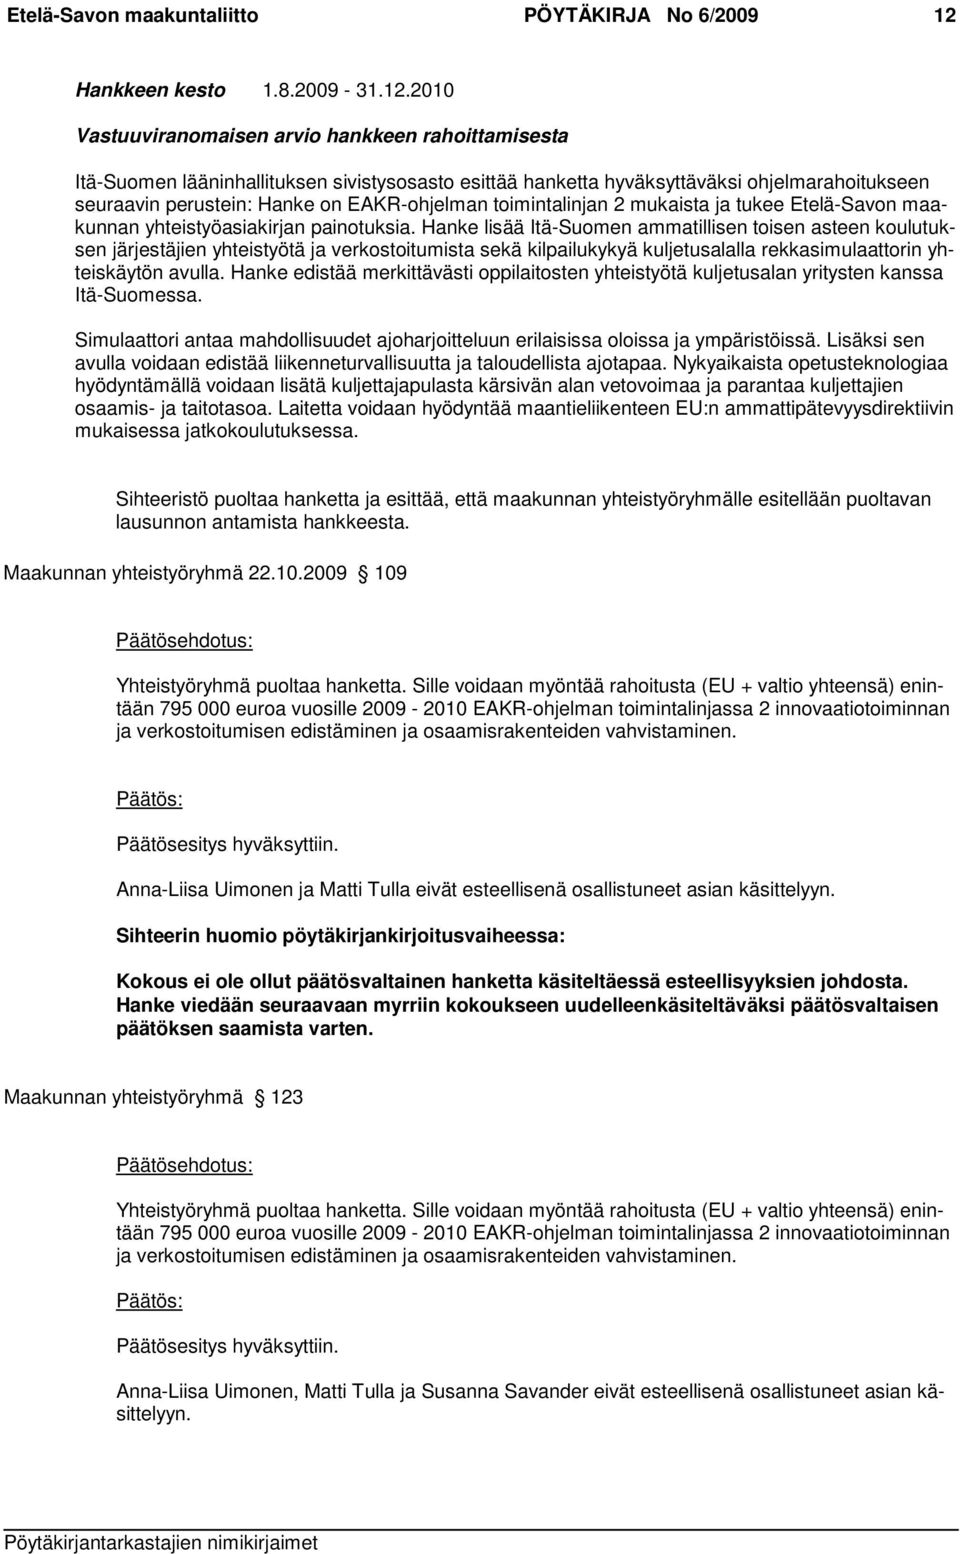 2010 Vastuuviranomaisen arvio hankkeen rahoittamisesta Itä-Suomen lääninhallituksen sivistysosasto esittää hanketta hyväksyttäväksi ohjelmarahoitukseen seuraavin perustein: Hanke on EAKR-ohjelman